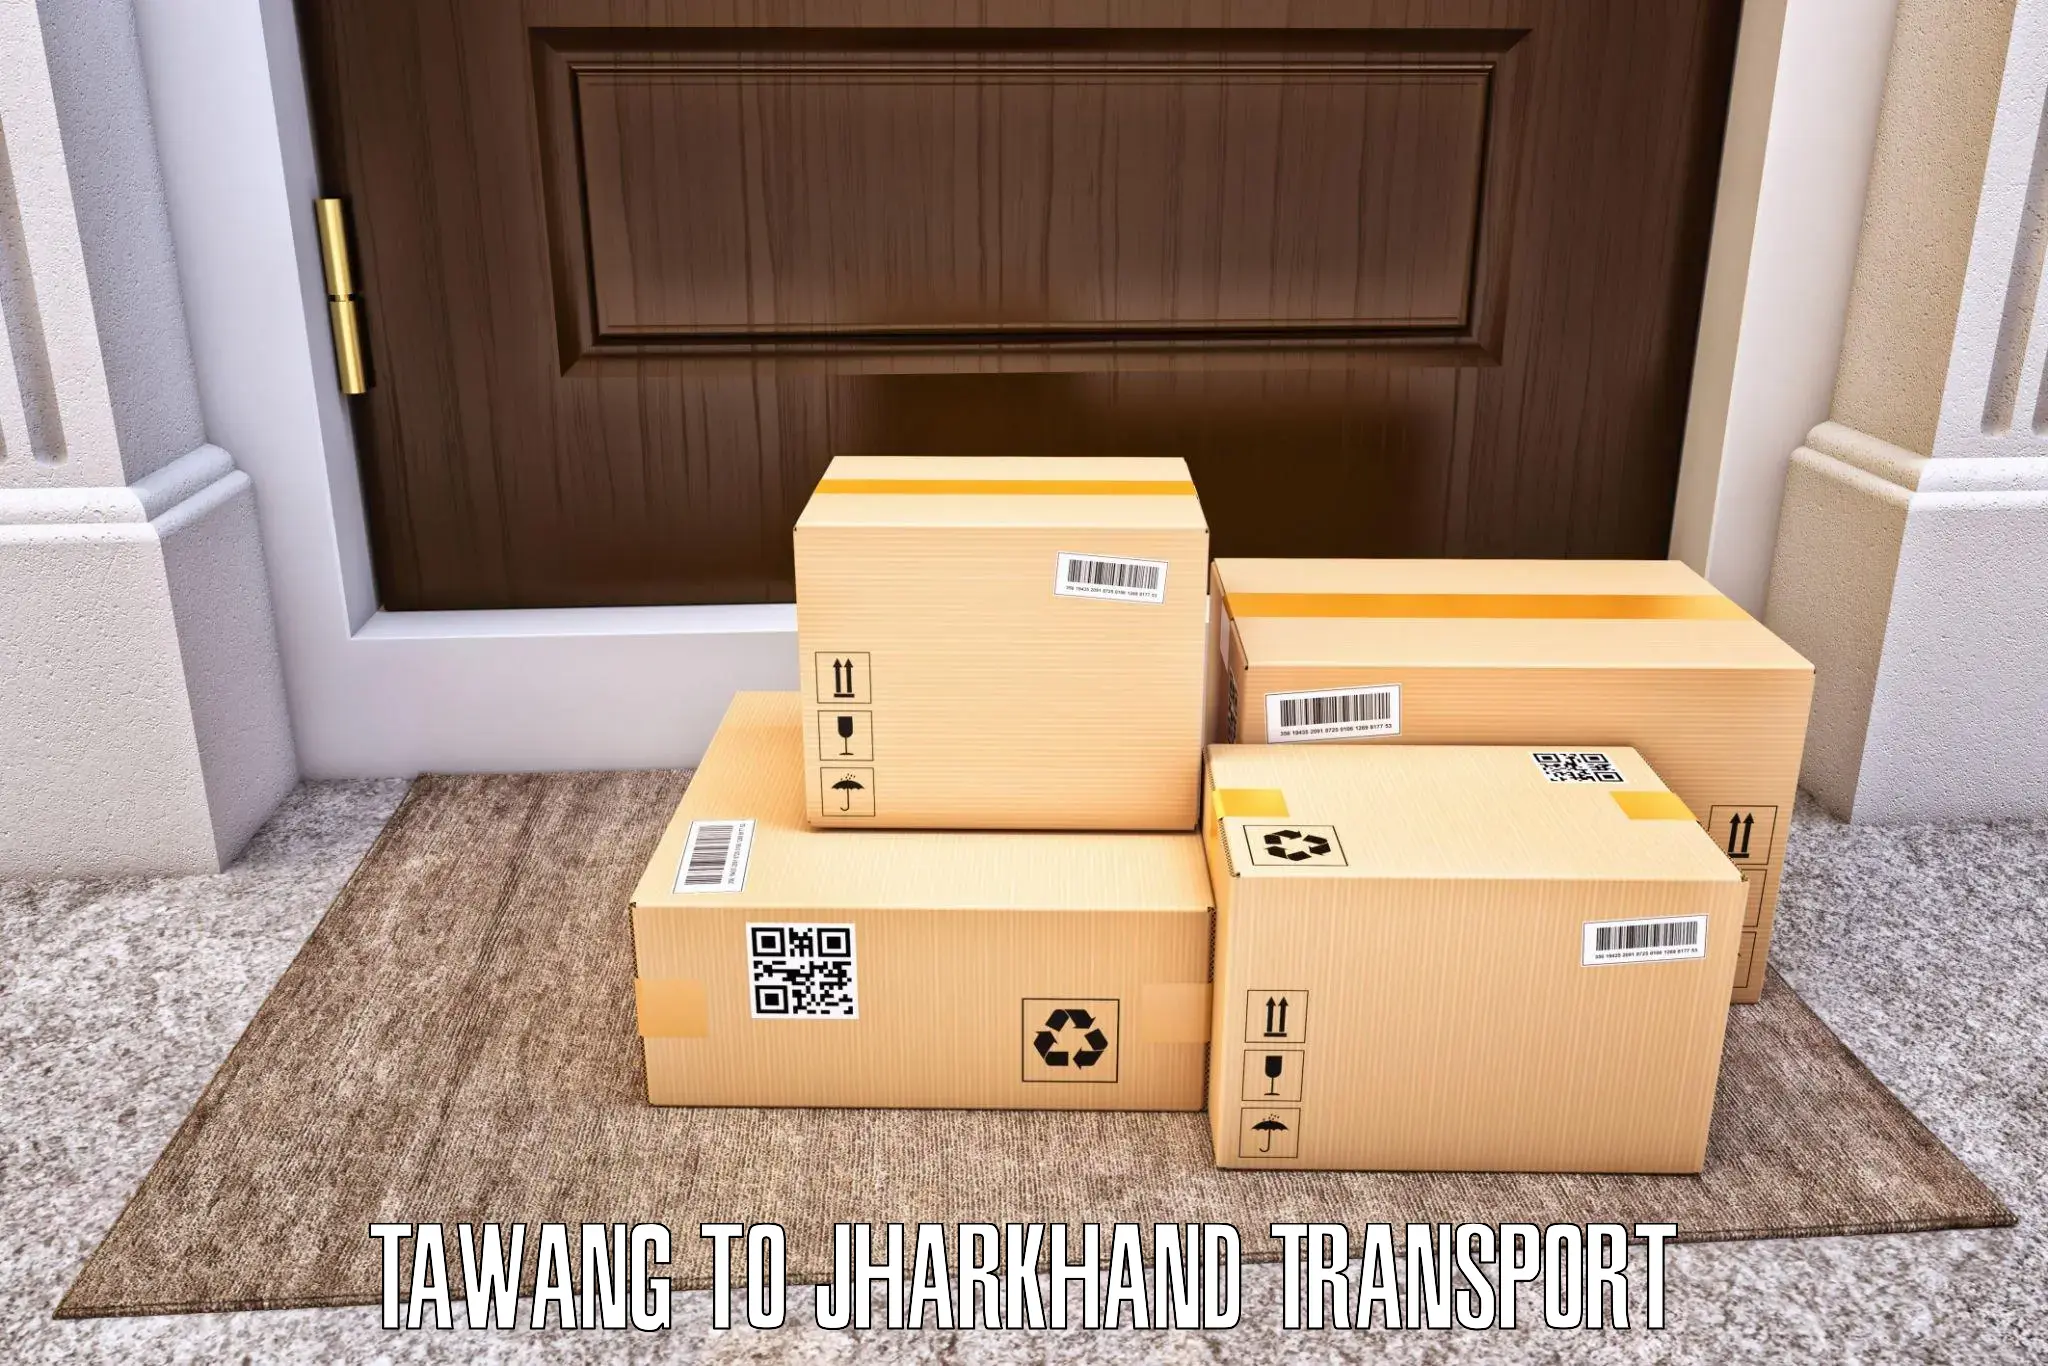 Online transport service Tawang to Palojori